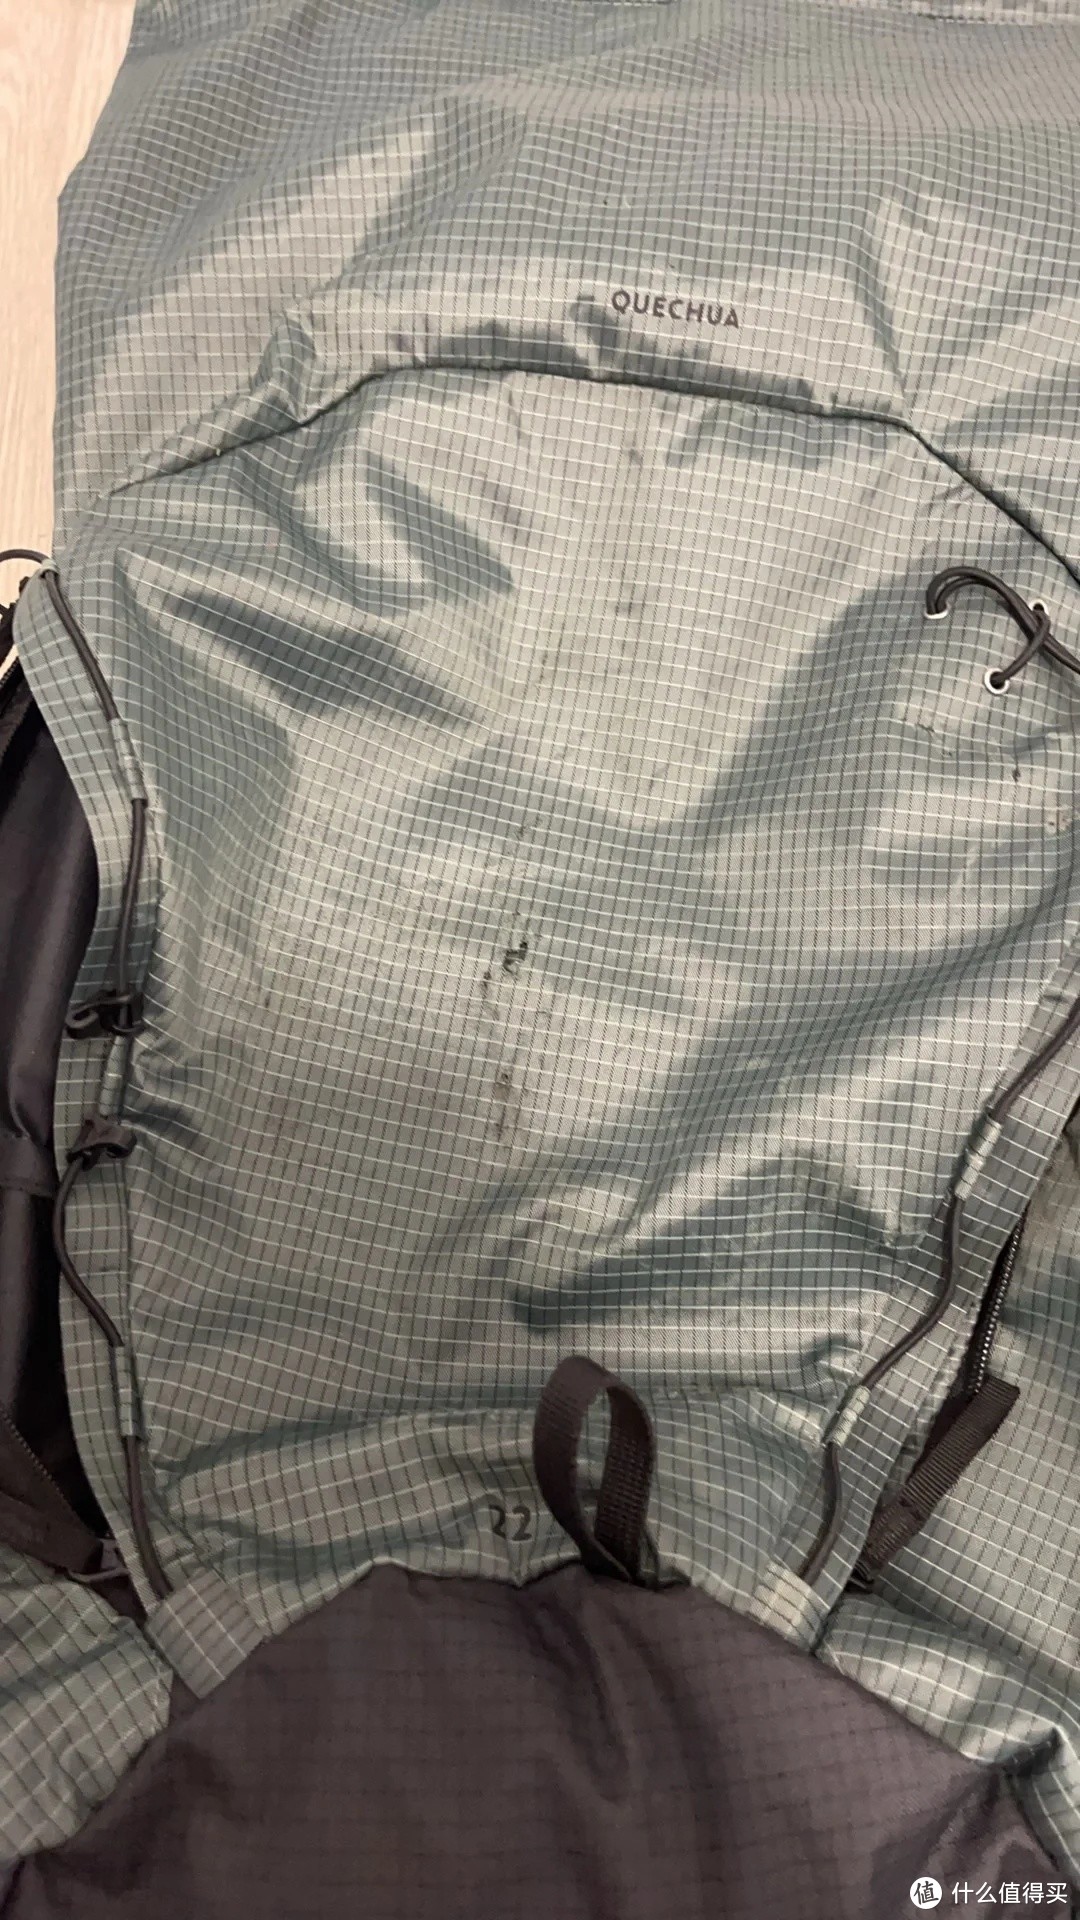 迪卡侬新款背包使用心得——避雷之选